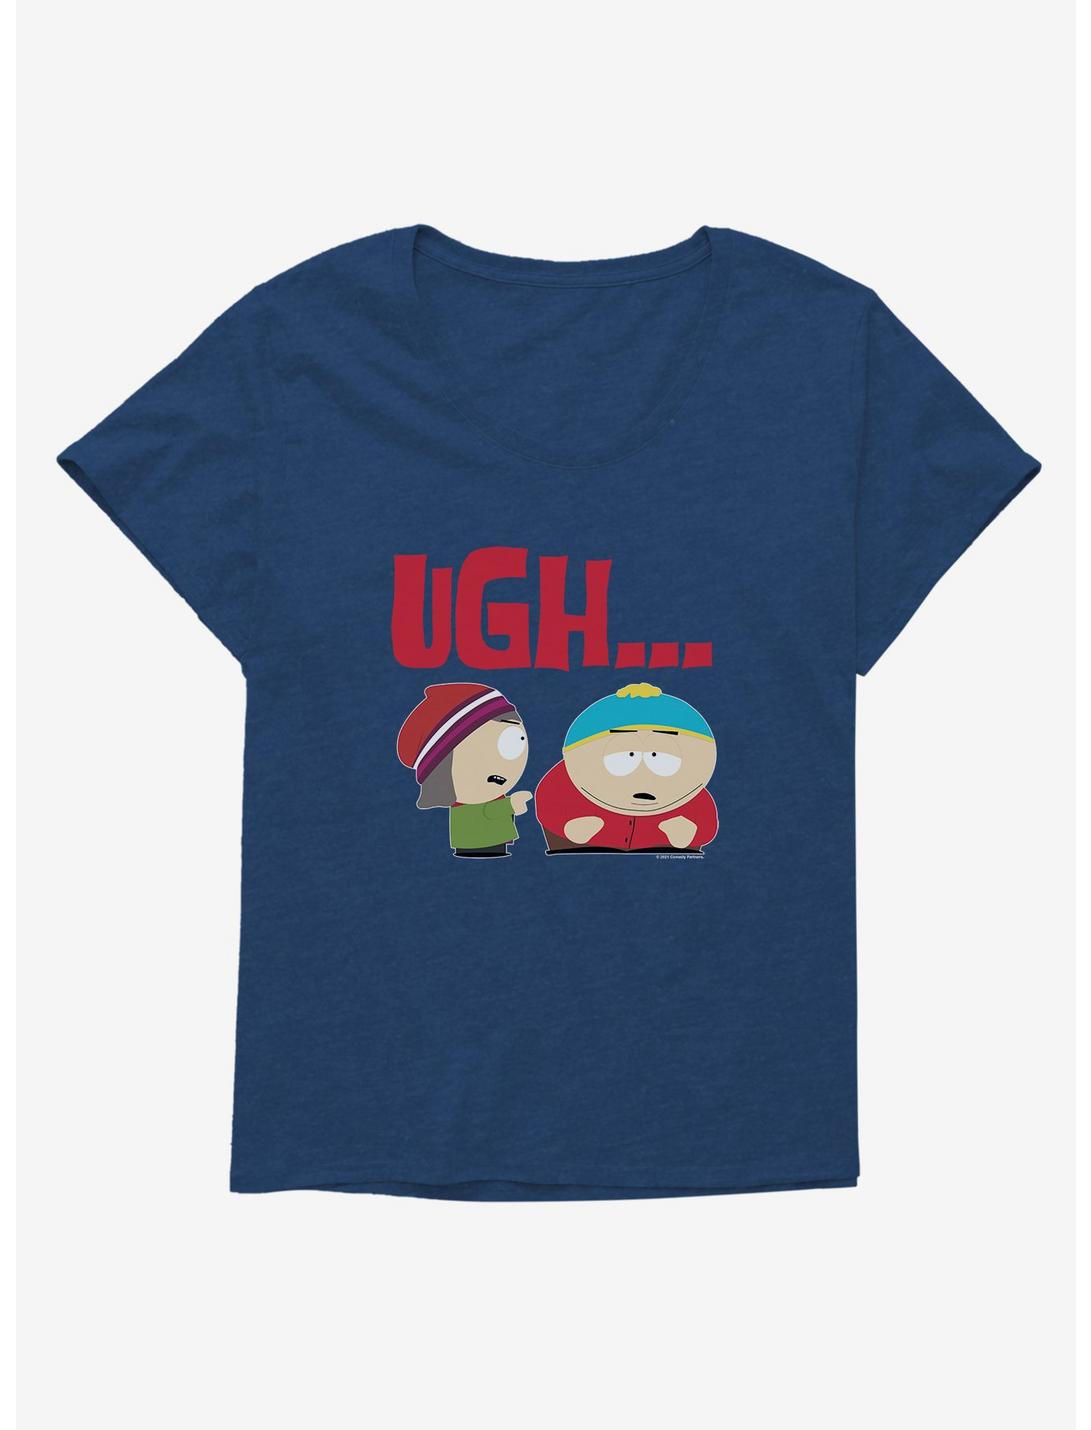 South Park Cartman Relationship Problems Womens T-Shirt Plus Size, , hi-res